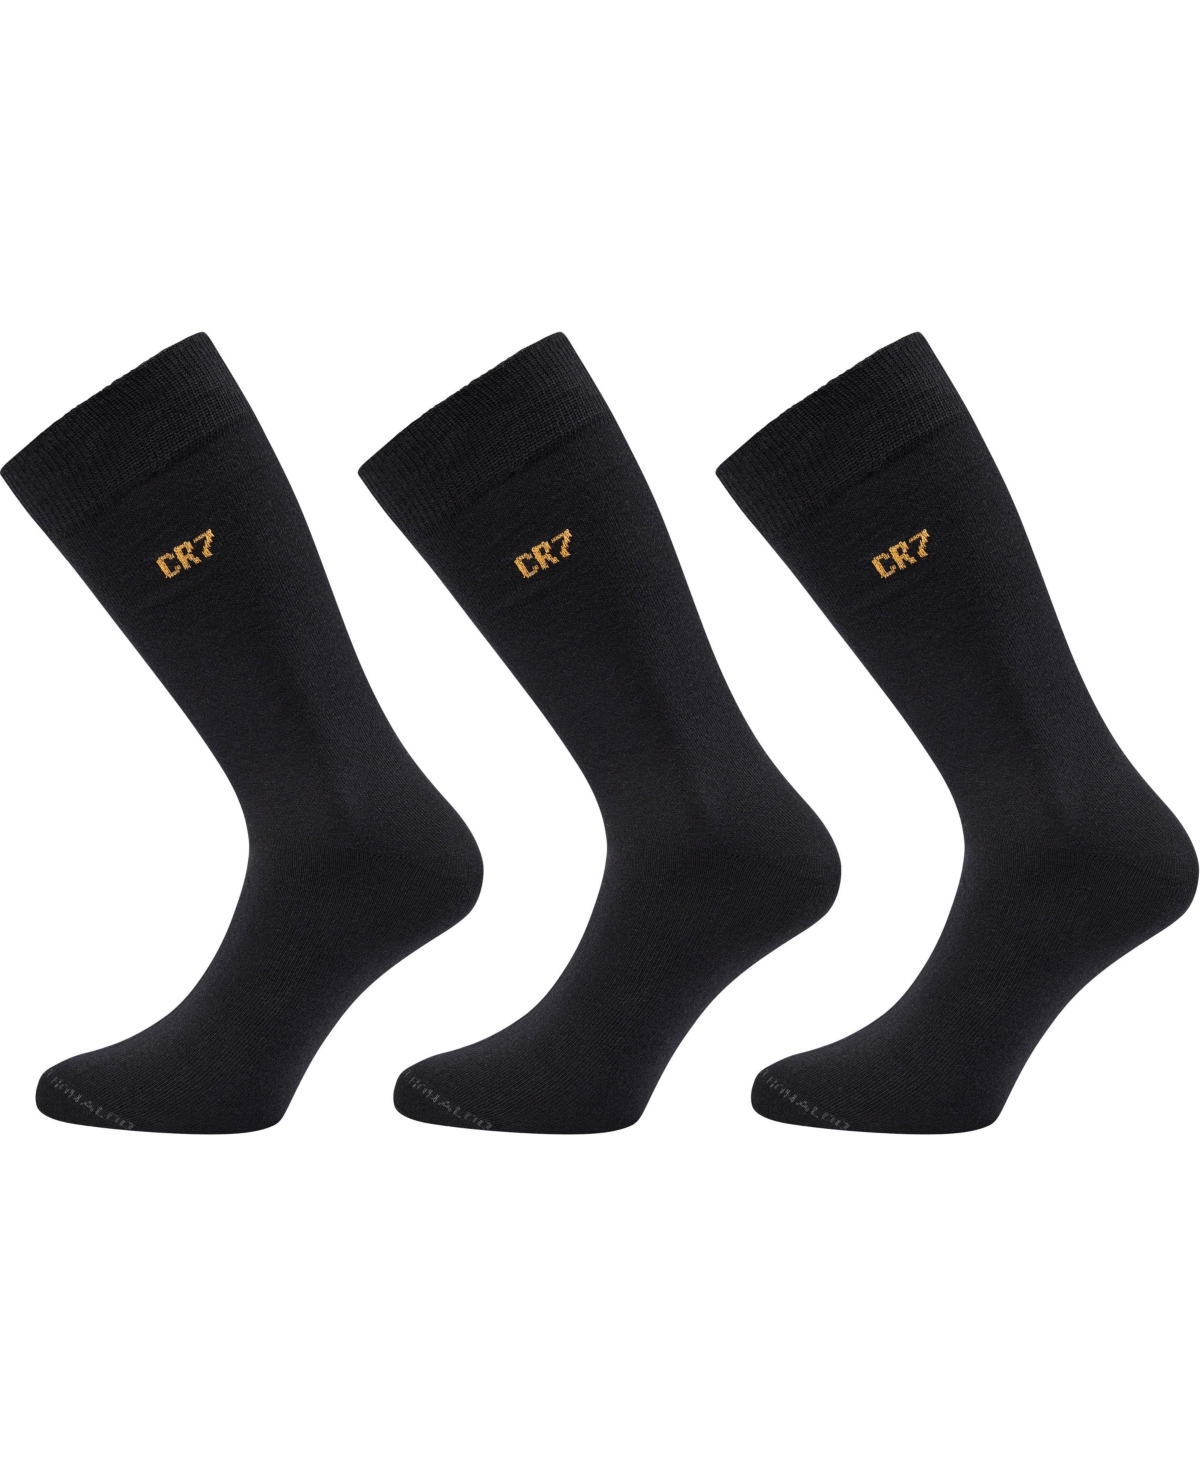 Cr7 Men's Fashion Socks In Gift Box, Pack Of 3 In Black